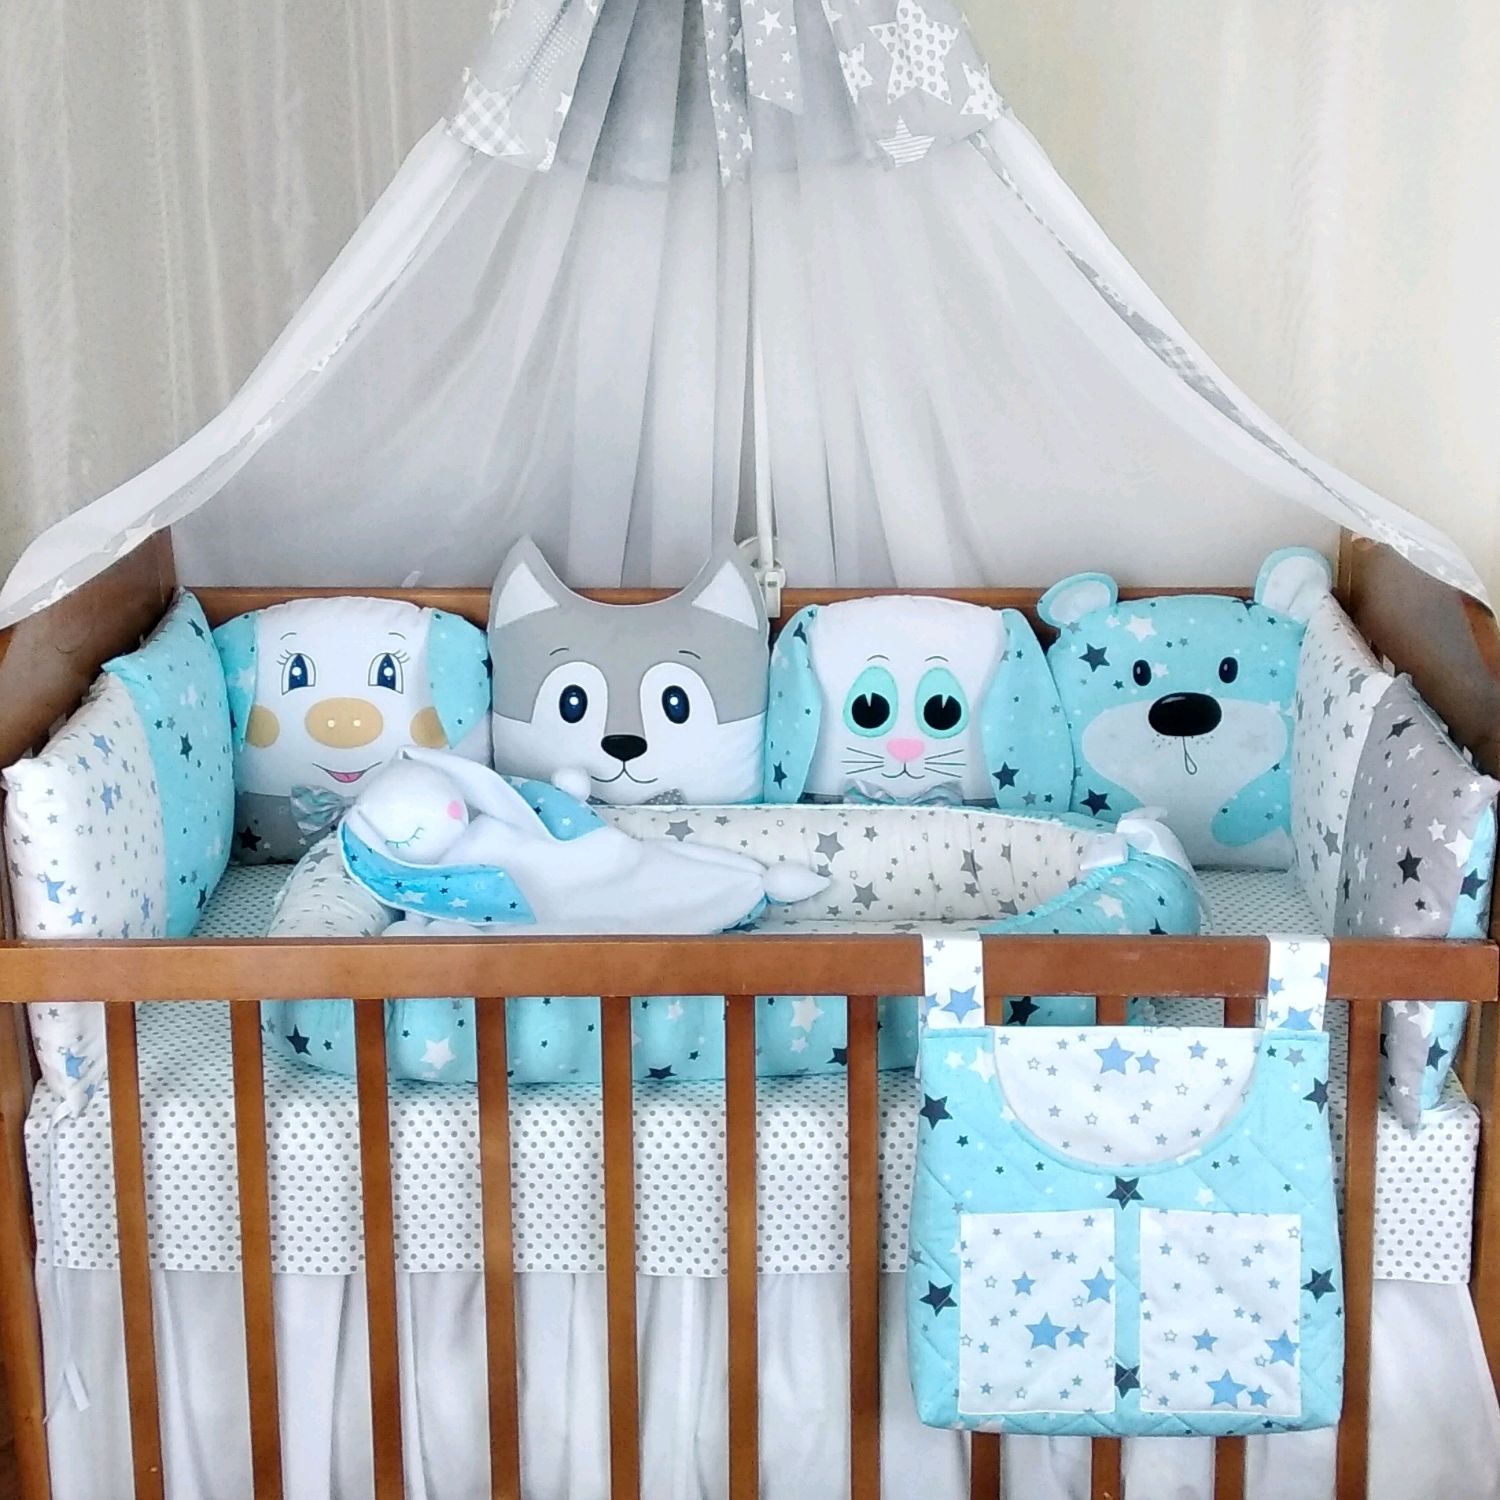 Бортики в кроватку для новорождённых: фото необычных вариантов оформления детских спальных мест